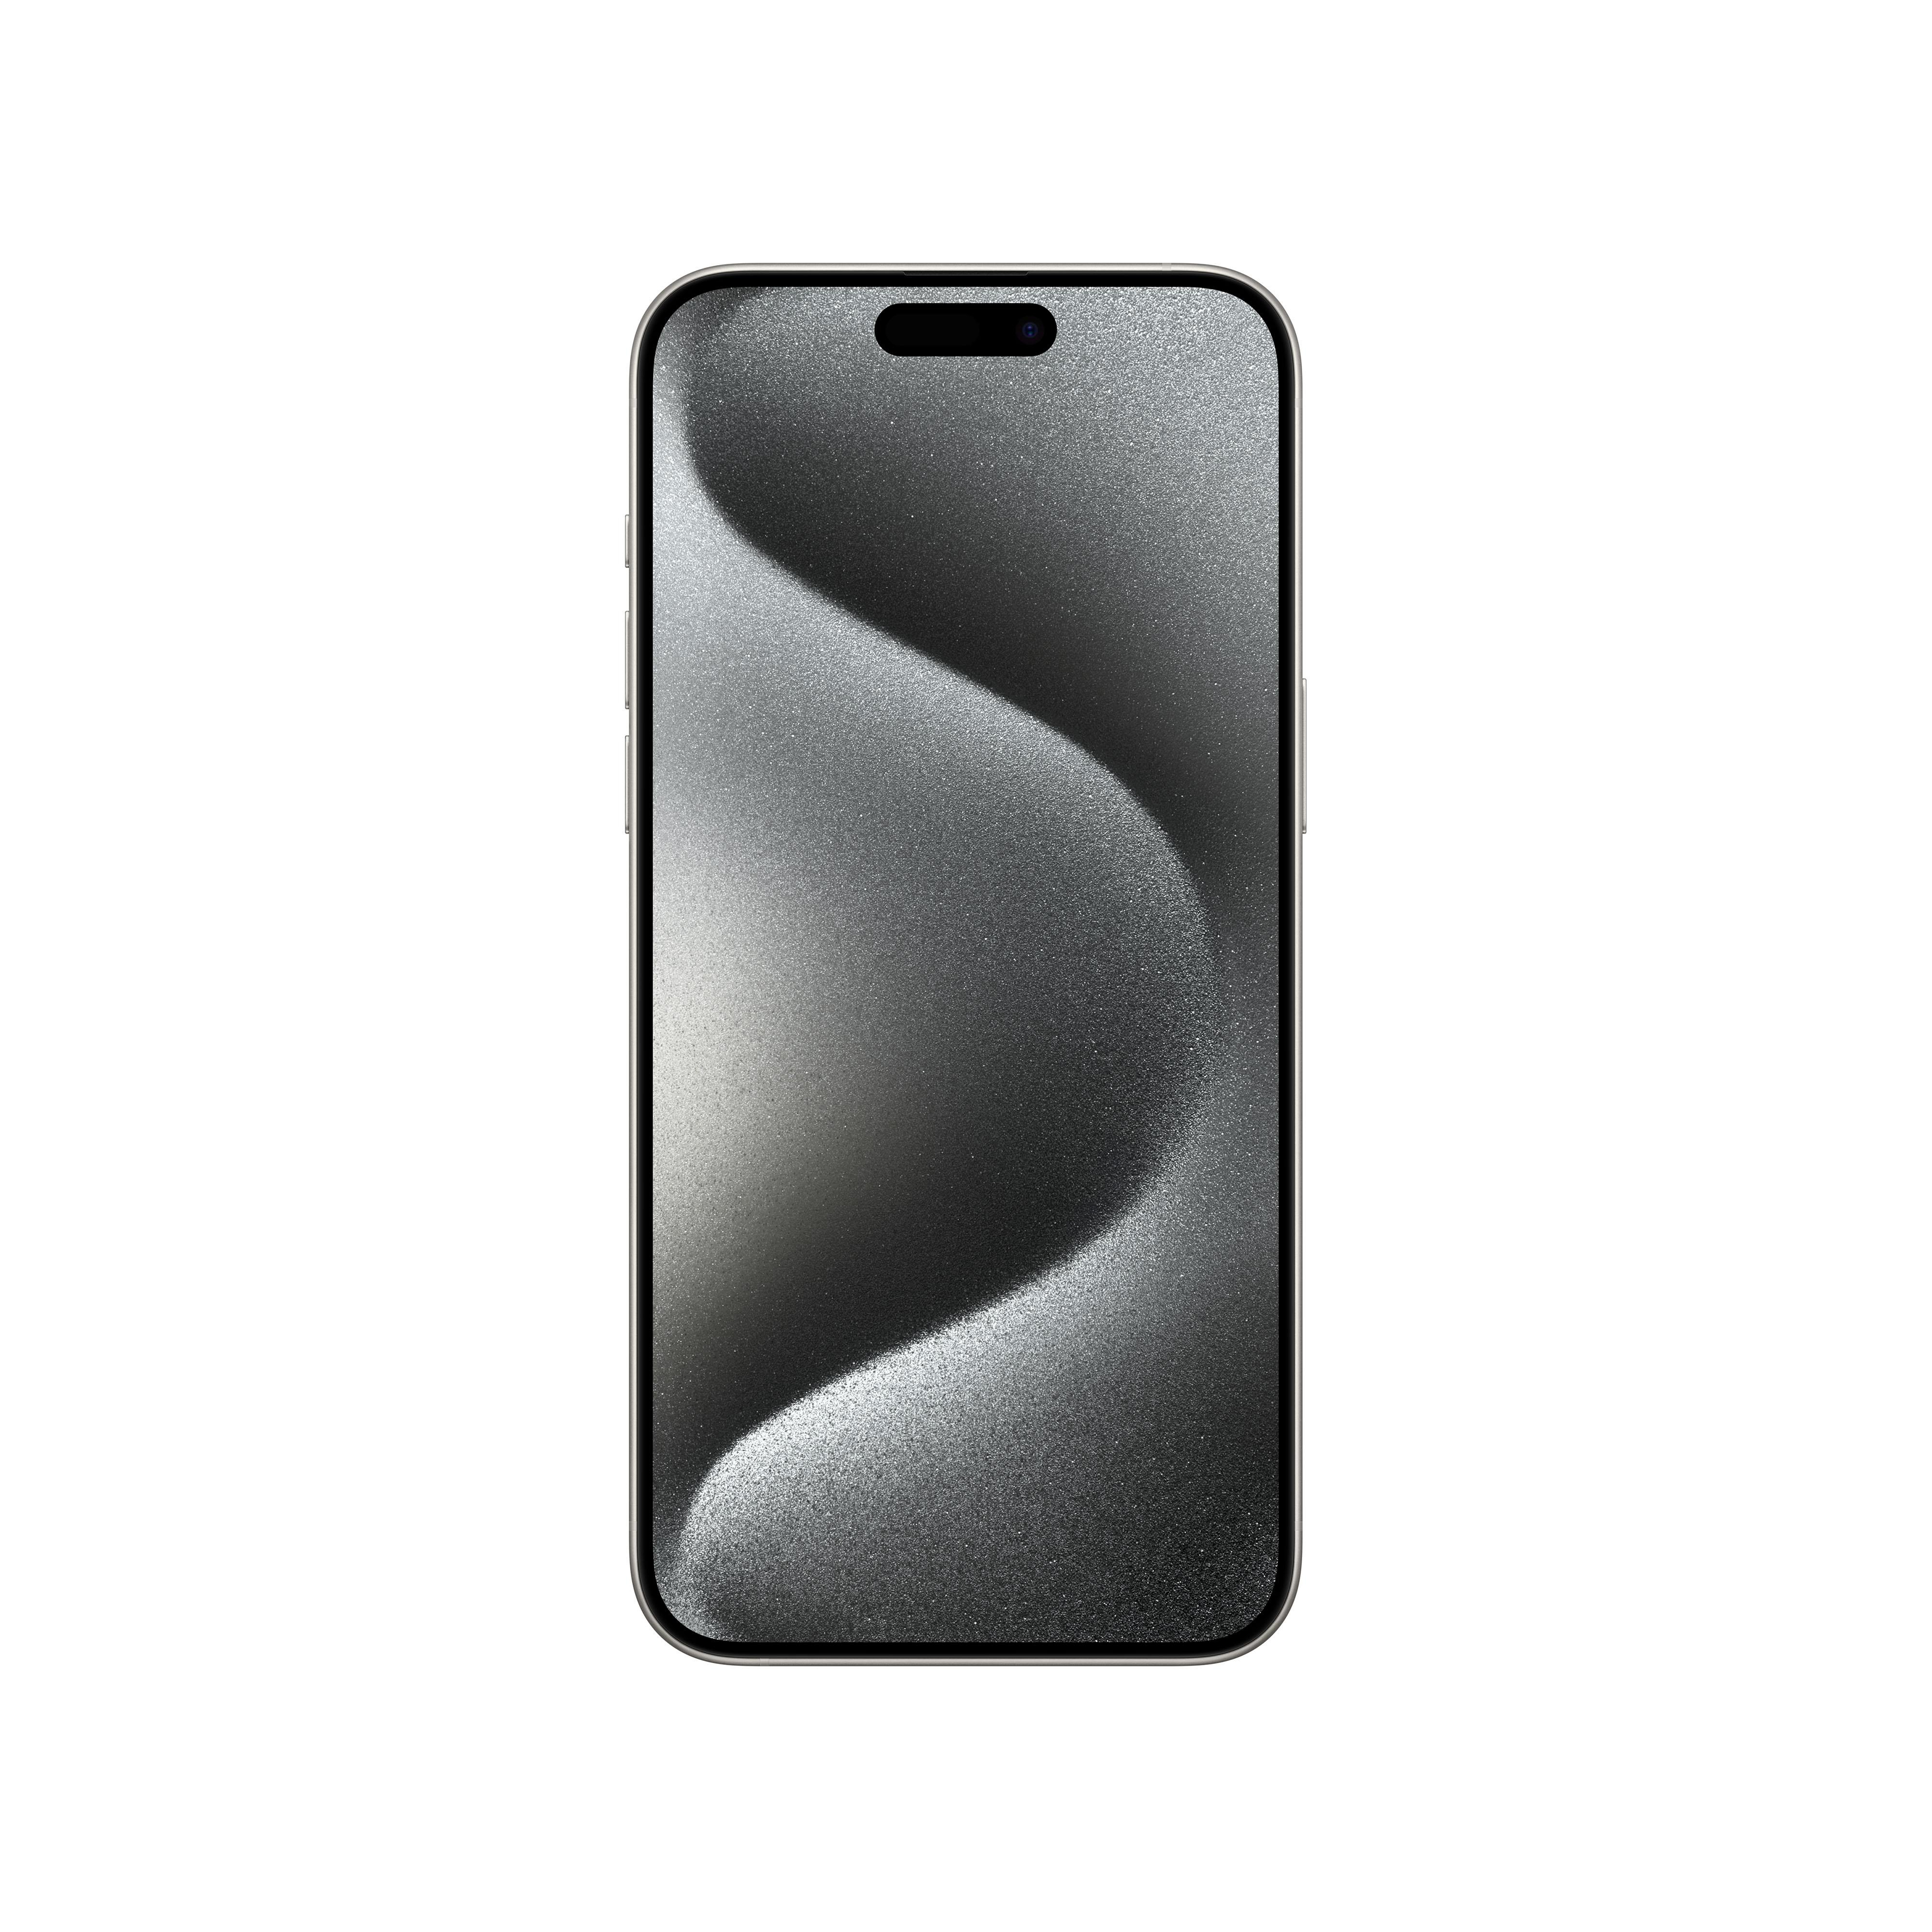 5G 15 iPhone Dual TB Titan Max SIM 1 Pro Weiß APPLE